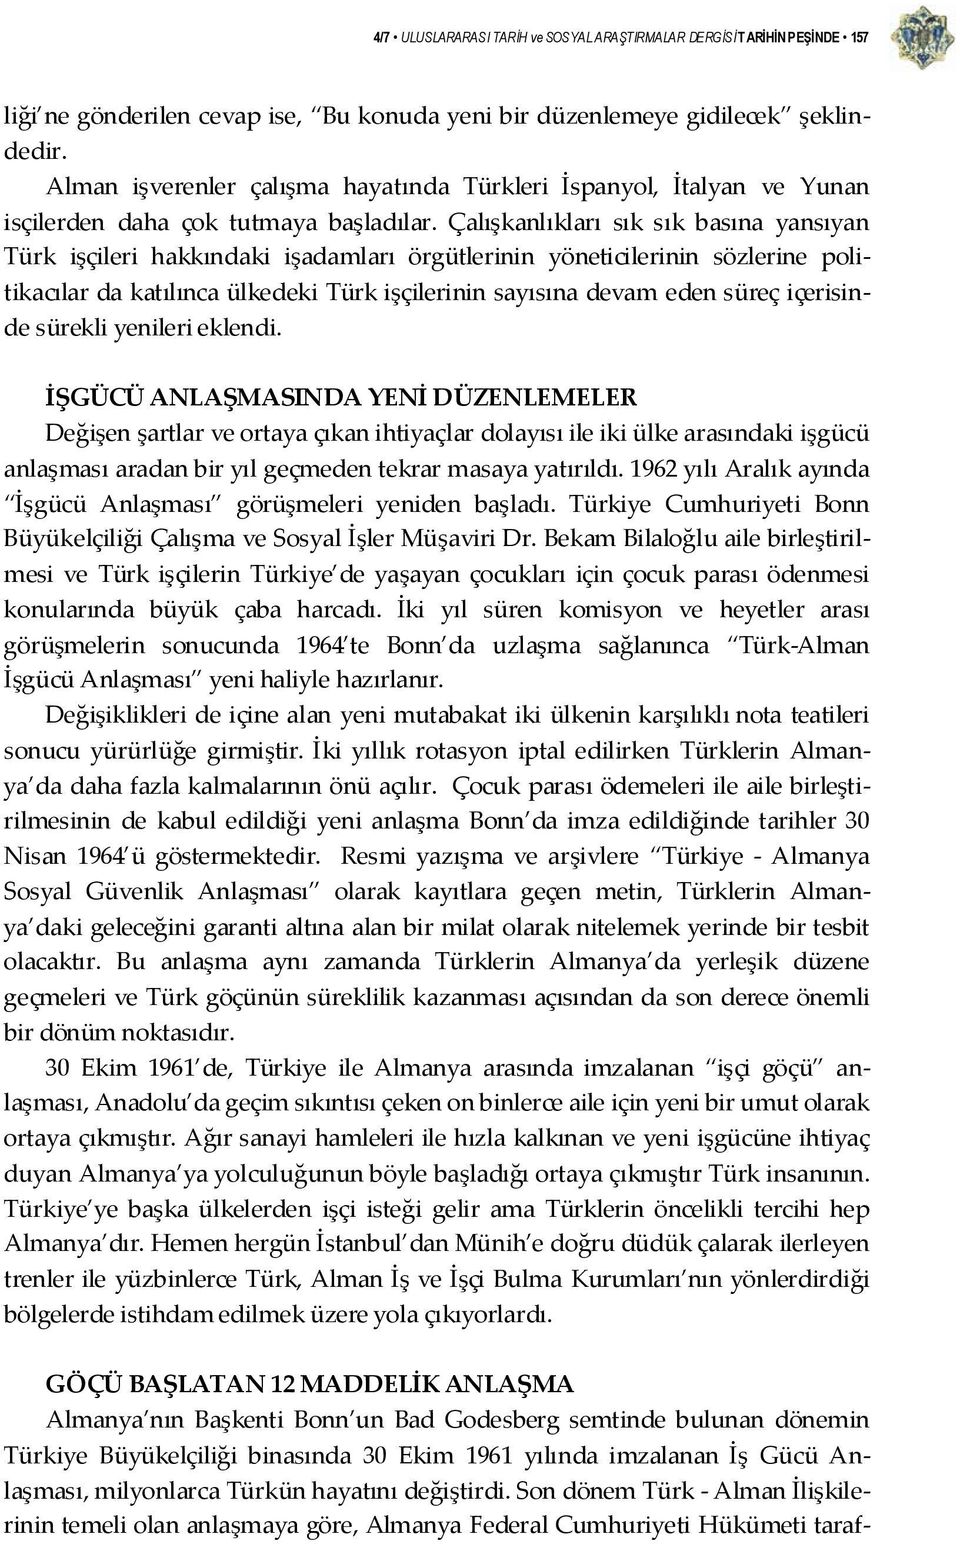 Çalışkanlıkları sık sık basına yansıyan Türk işçileri hakkındaki işadamları örgütlerinin yöneticilerinin sözlerine politikacılar da katılınca ülkedeki Türk işçilerinin sayısına devam eden süreç